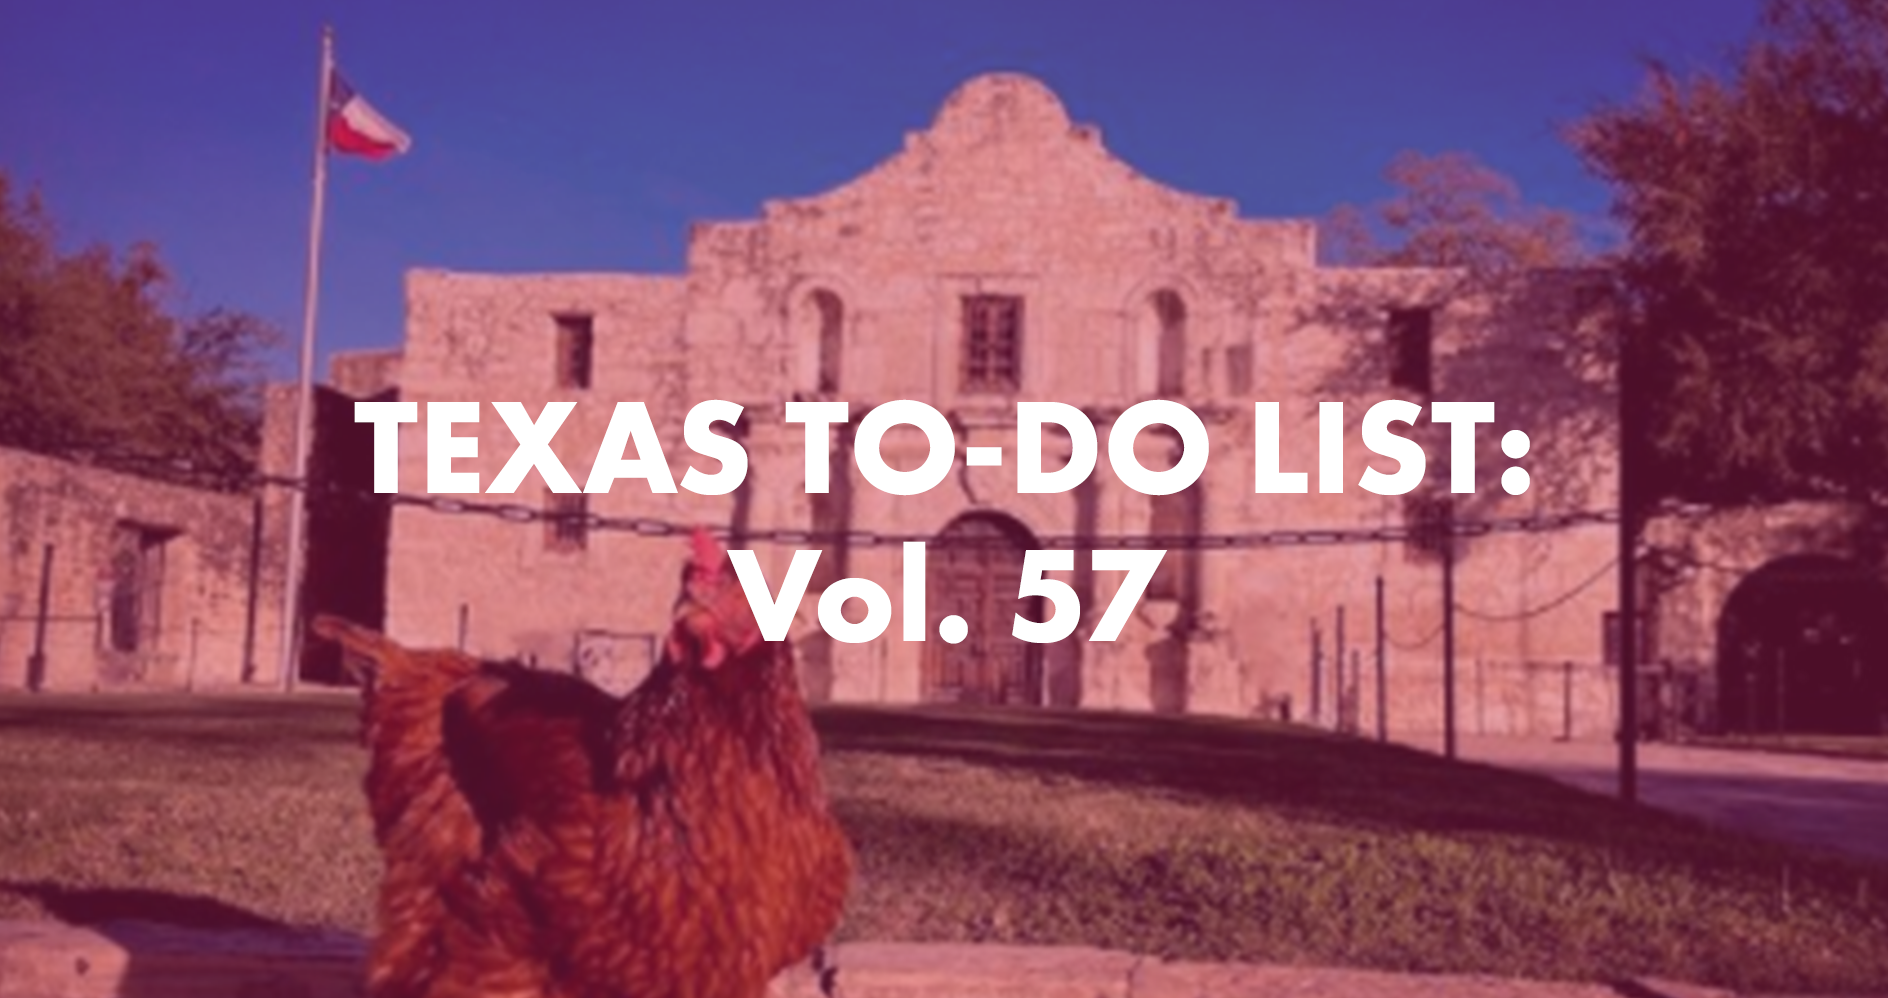 Texas To-Do List Vol. 57